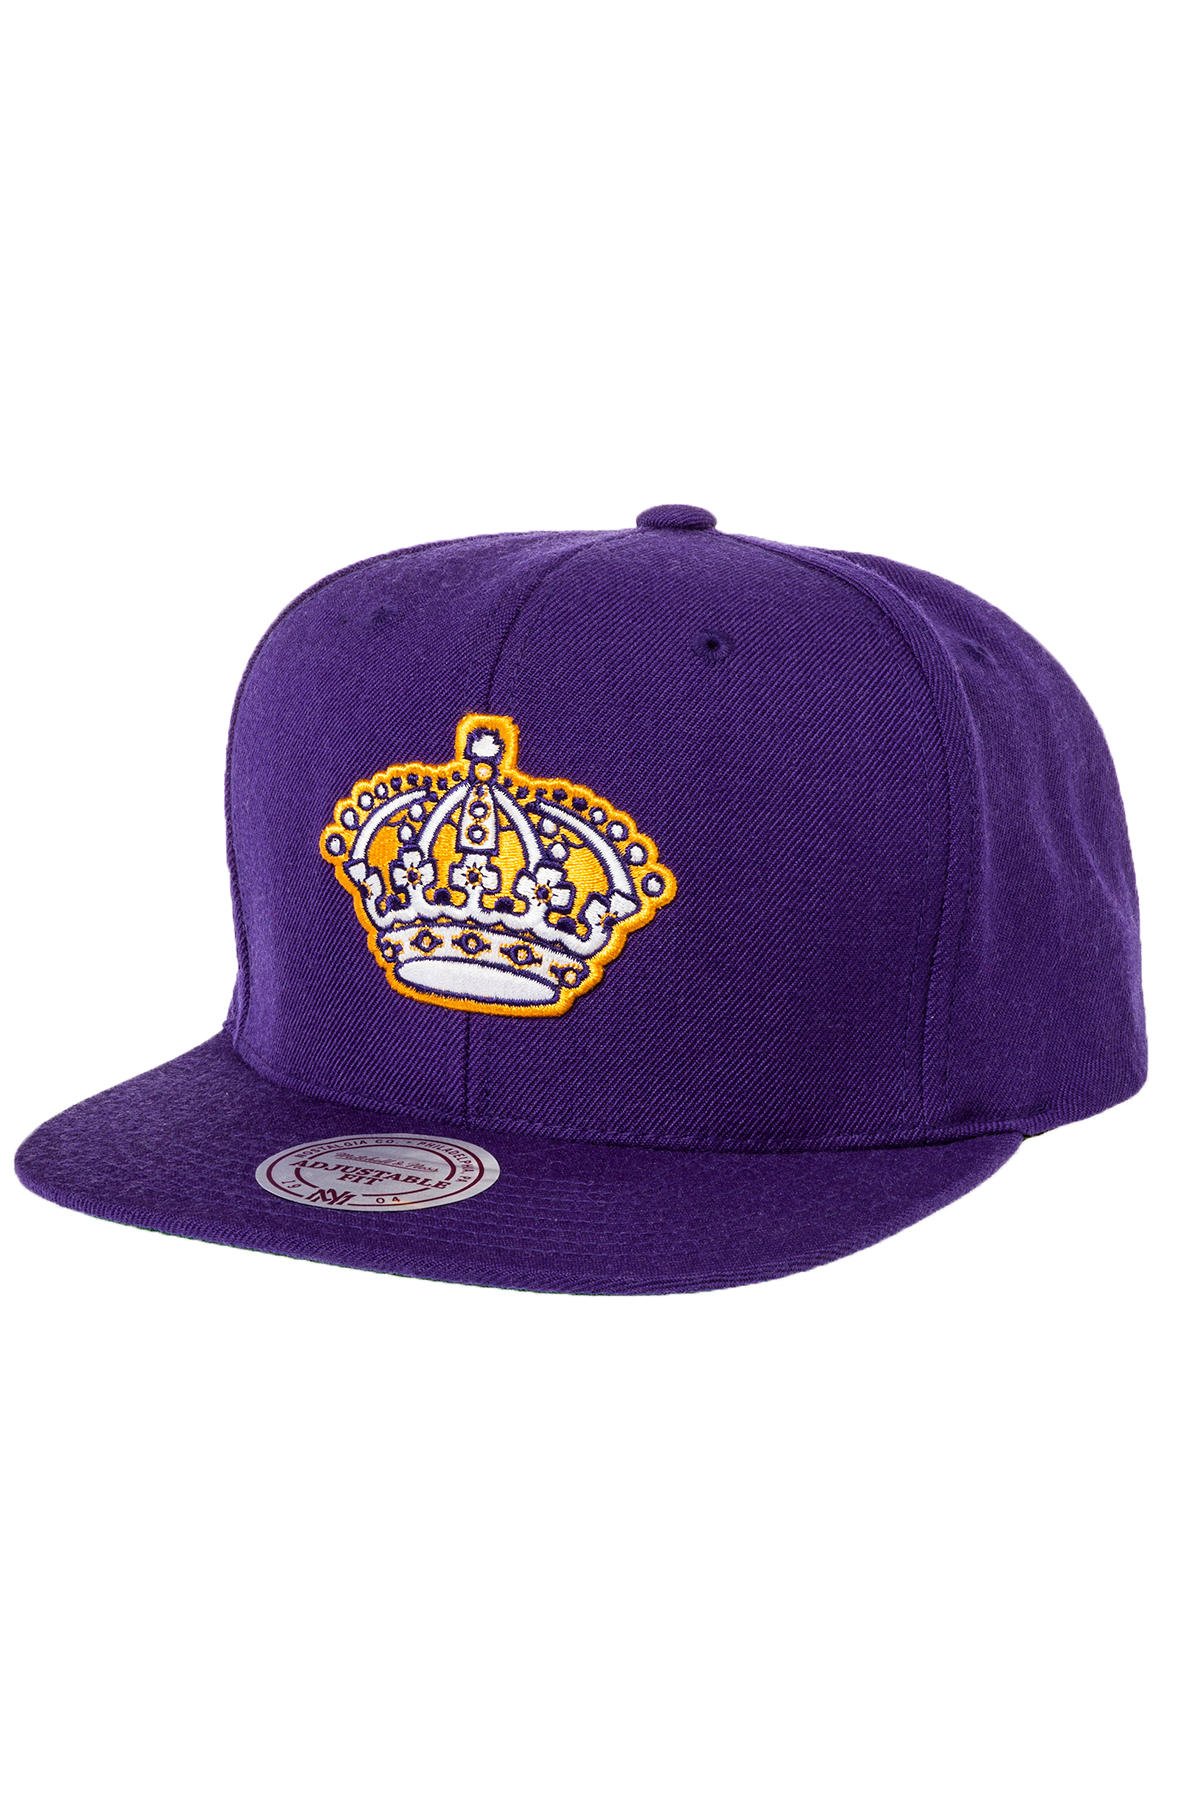 purple los angeles kings hat